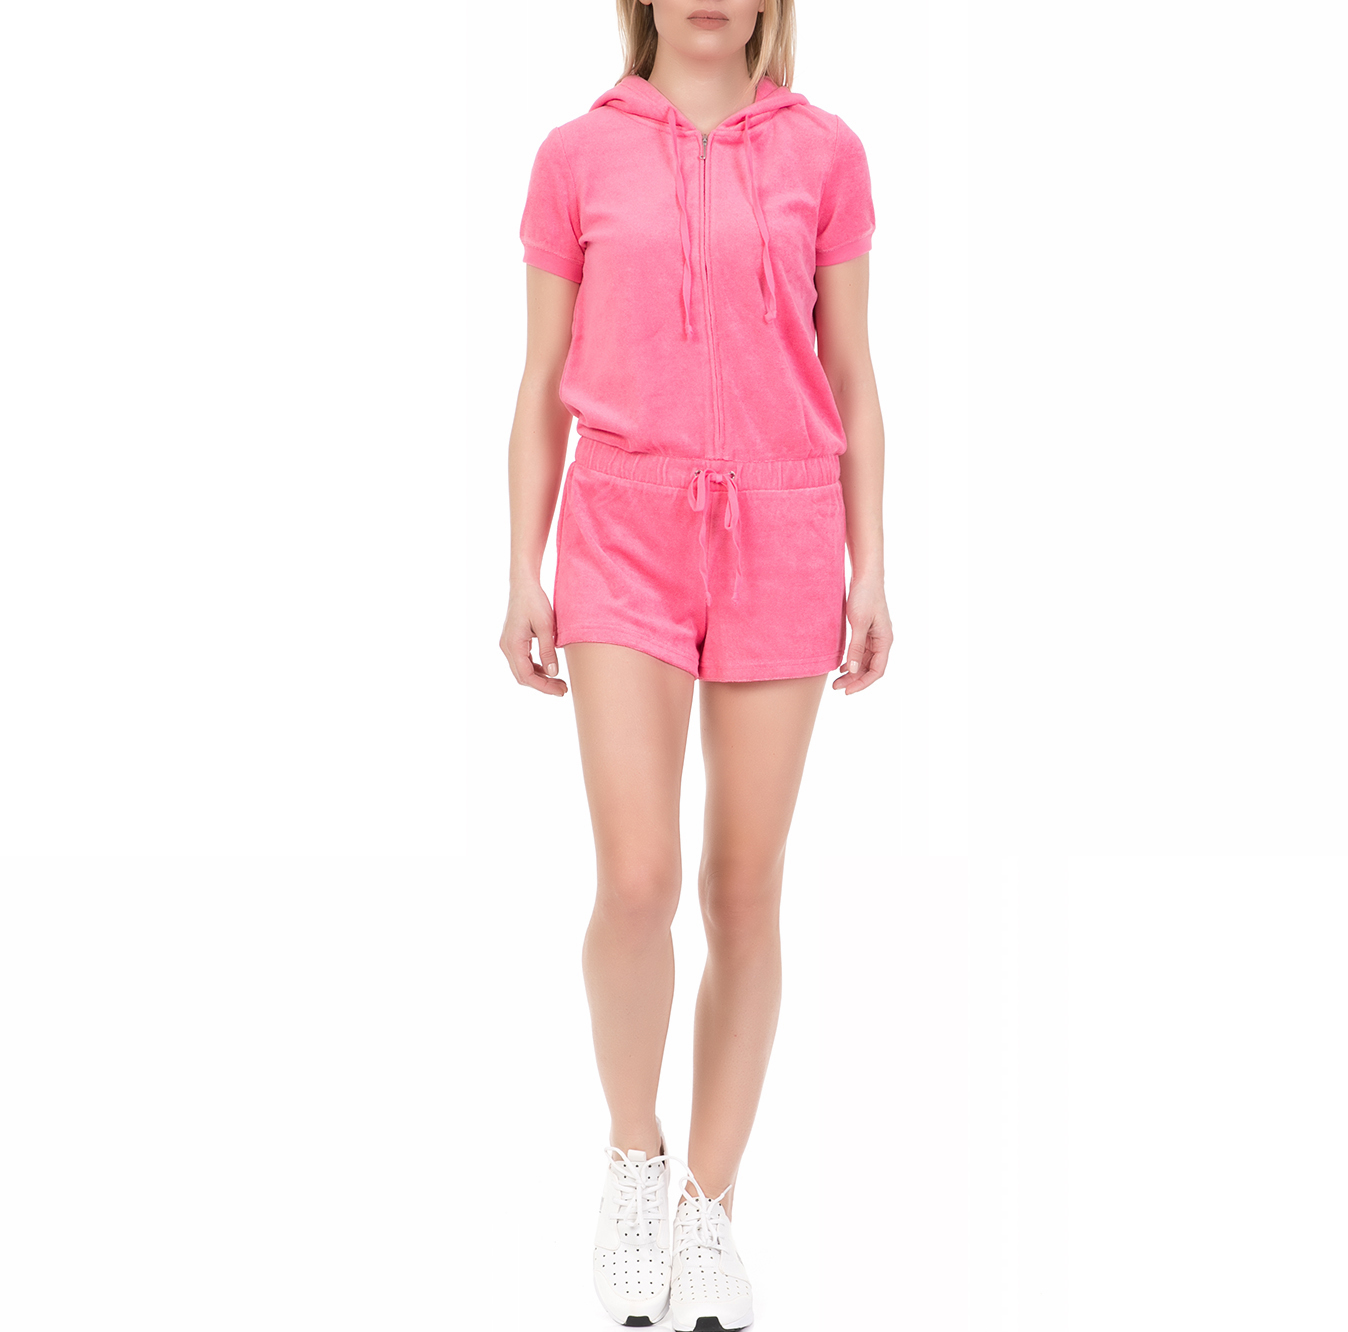 Γυναικεία/Ρούχα/Ολόσωμες Φόρμες JUICY COUTURE - Γυναικείο ολόσωμο σορτς MICROTERRY HOODED JUICY COUTURE ροζ